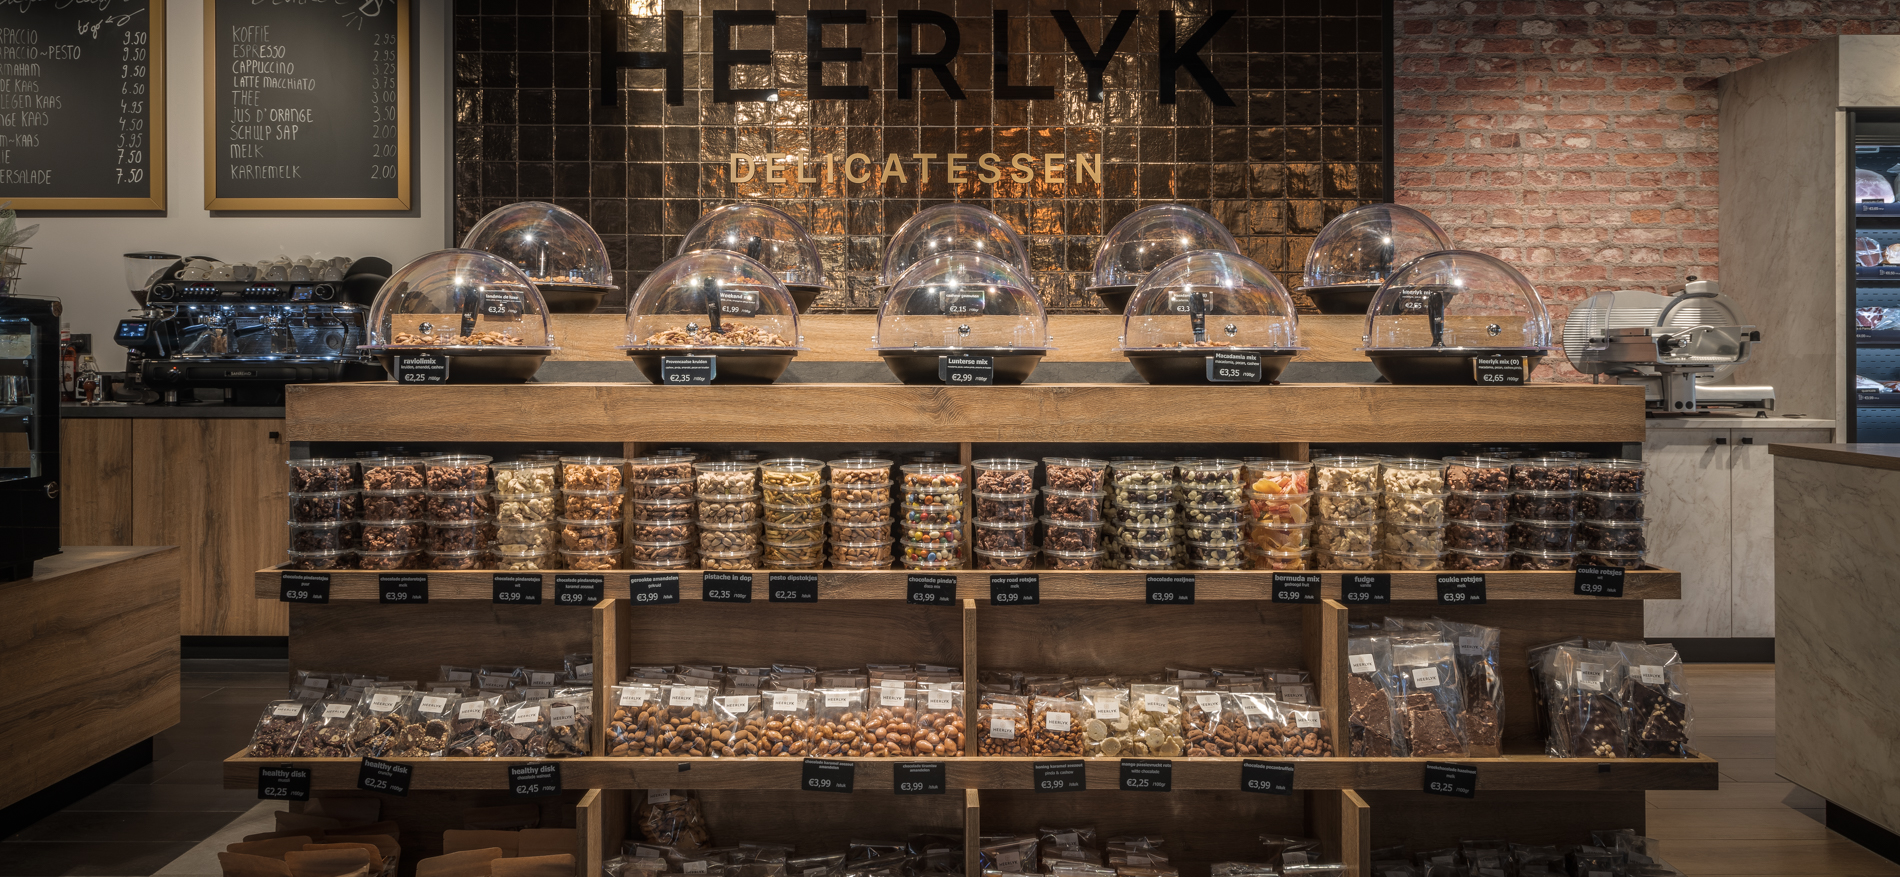 Heerlyk Delicatessen | Lunteren (NL) - 